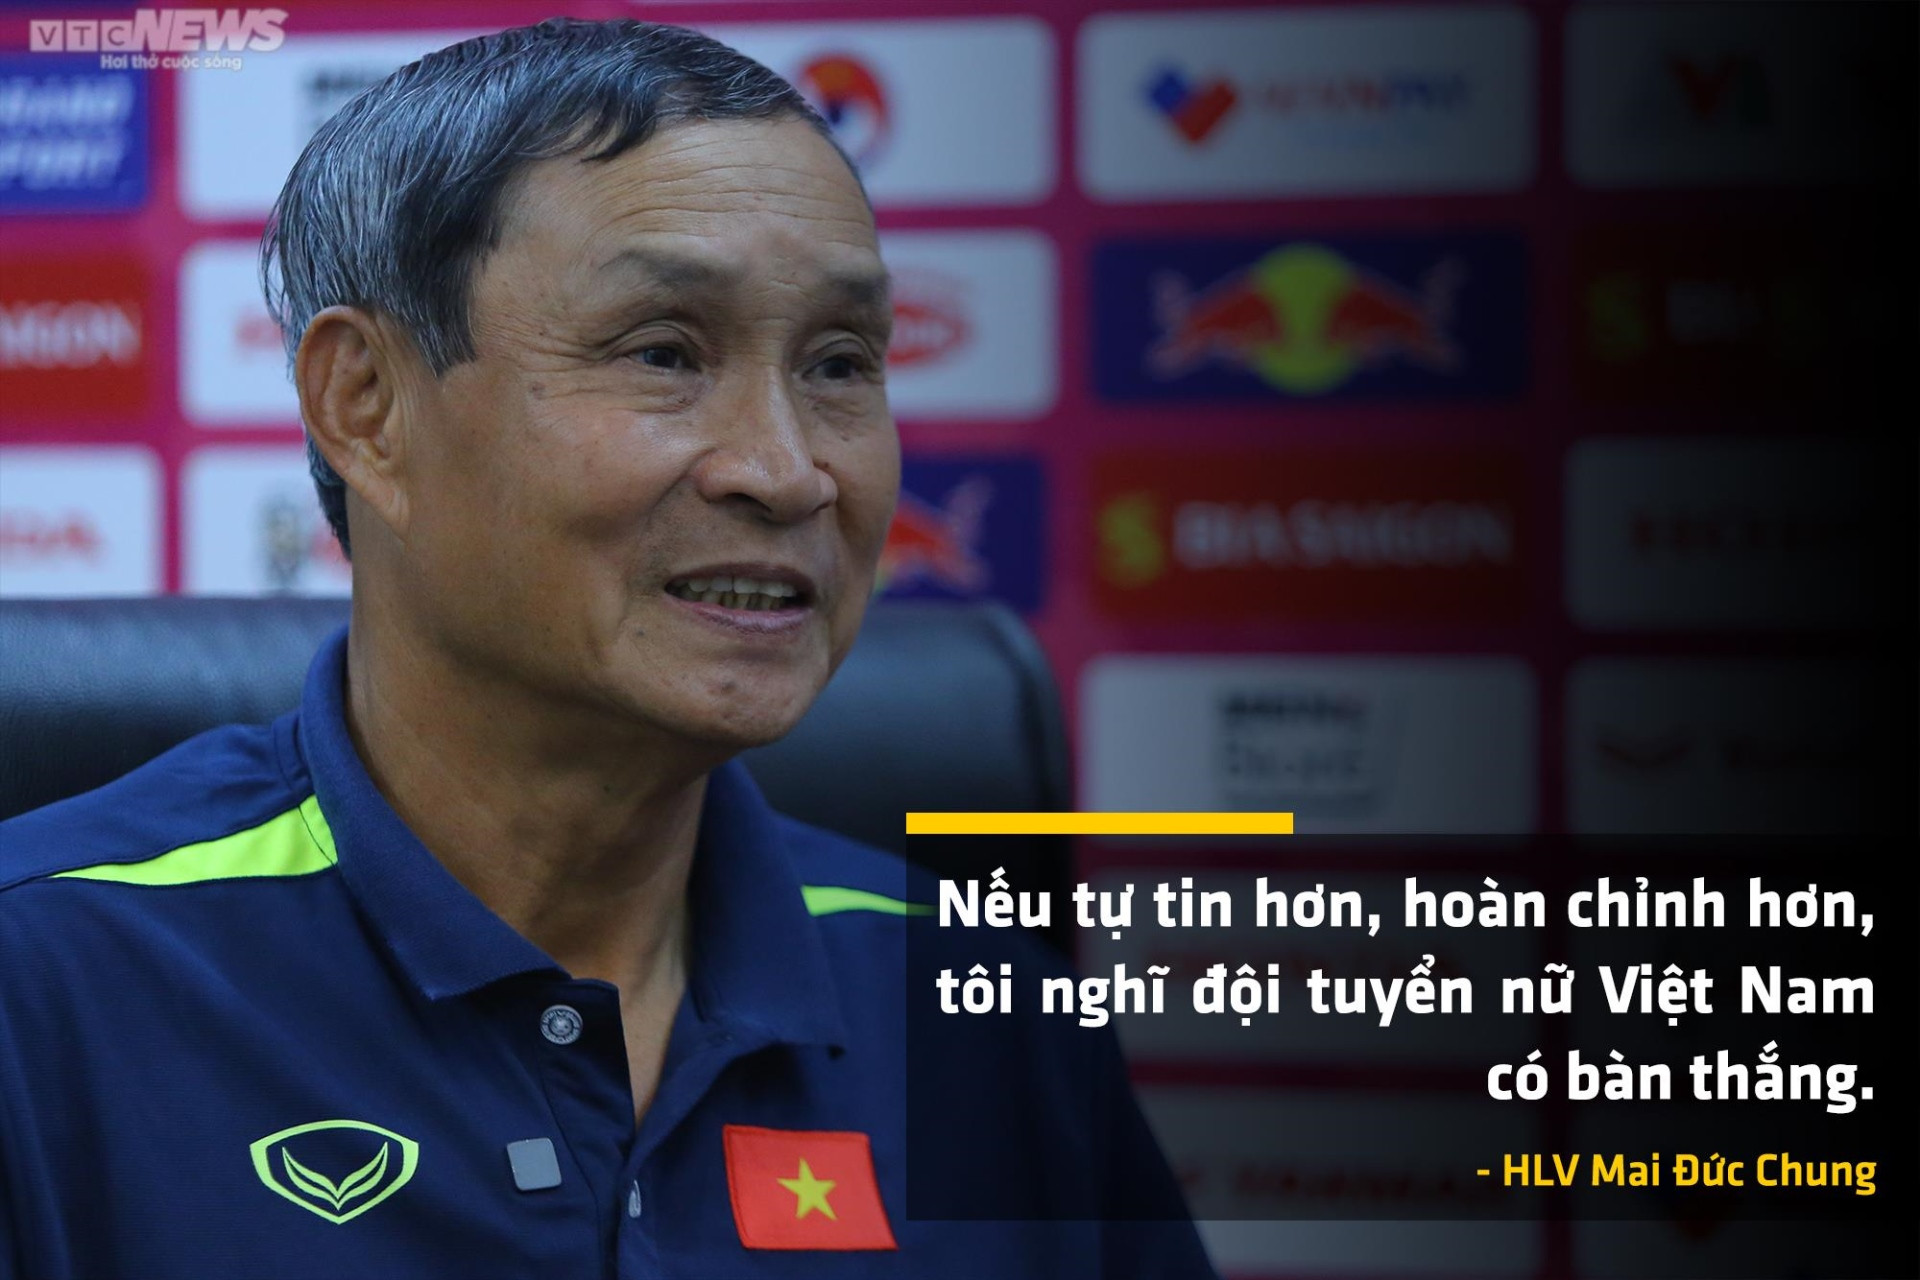 HLV Mai Đức Chung: Thật tiếc, tuyển nữ Việt Nam chưa ghi bàn ở World Cup - 3